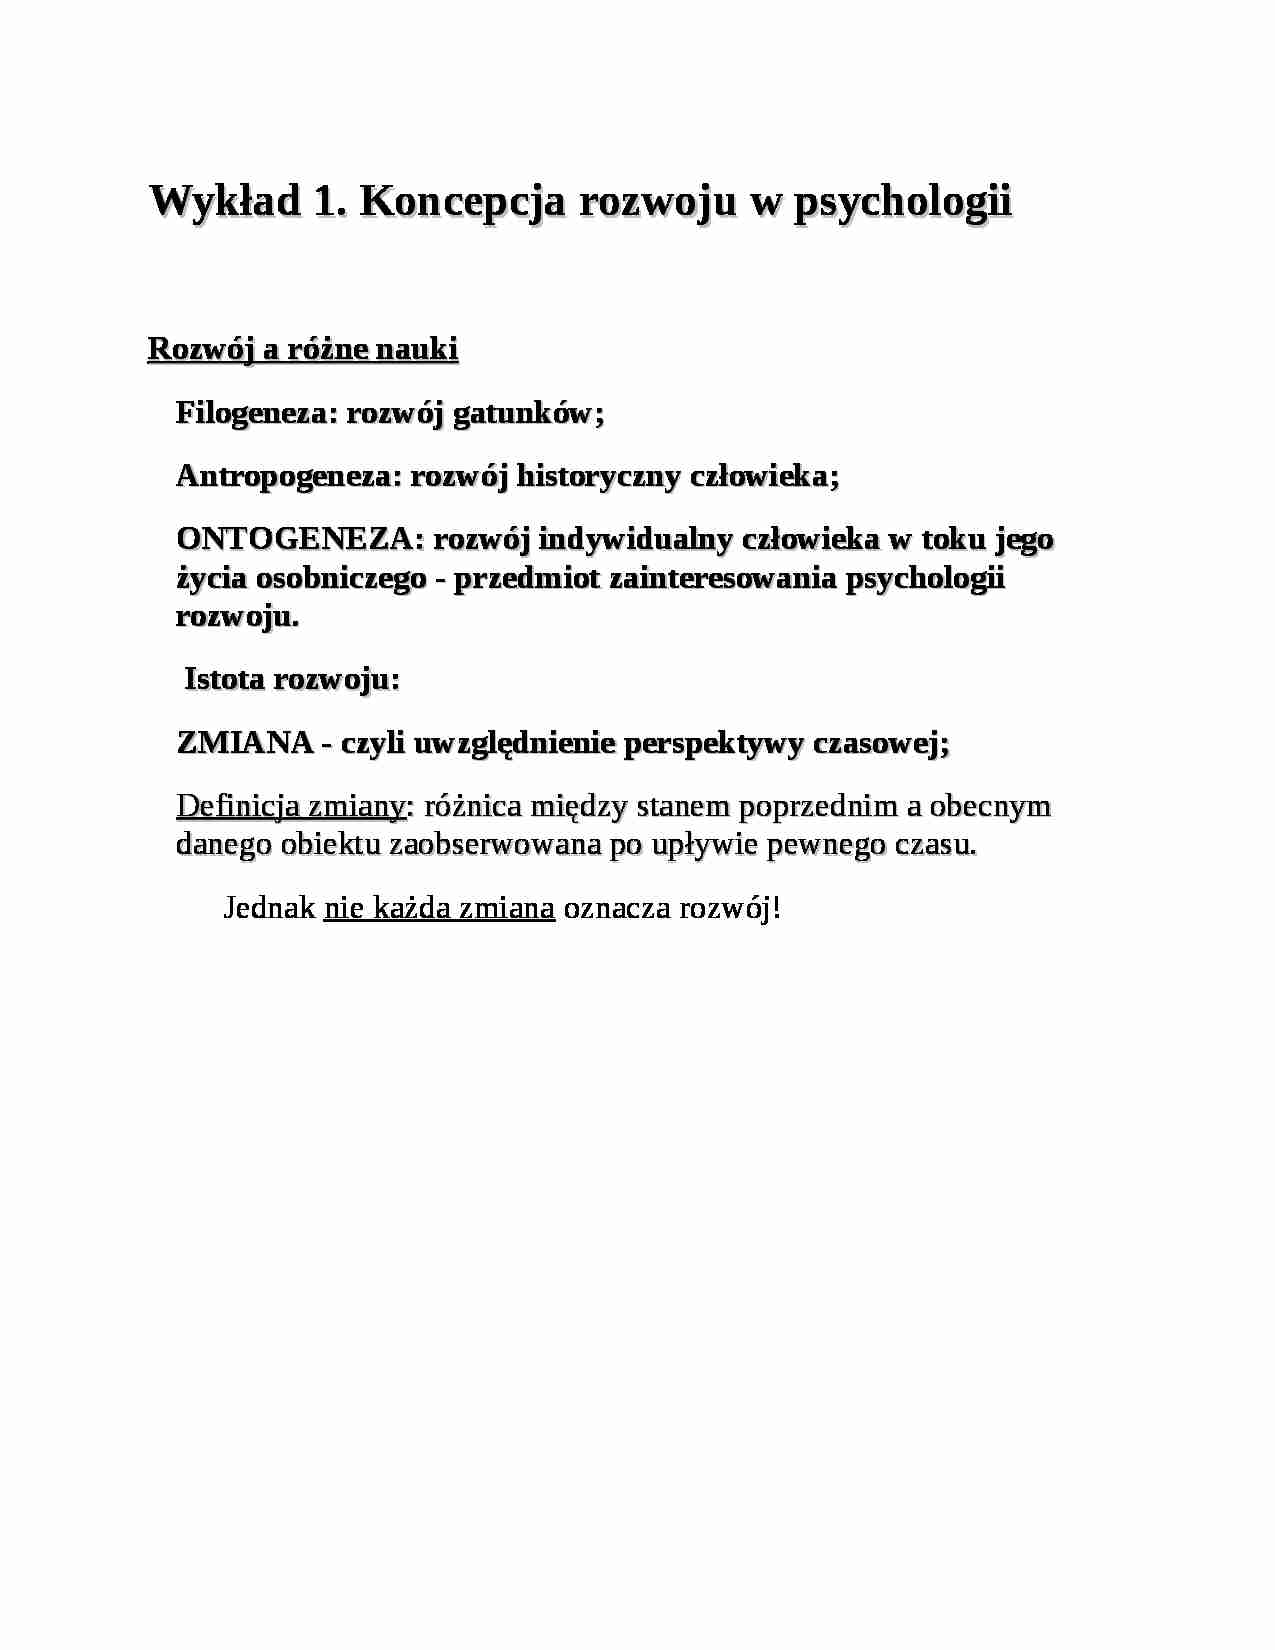 Koncepcja rozwoju w psychologii - strona 1